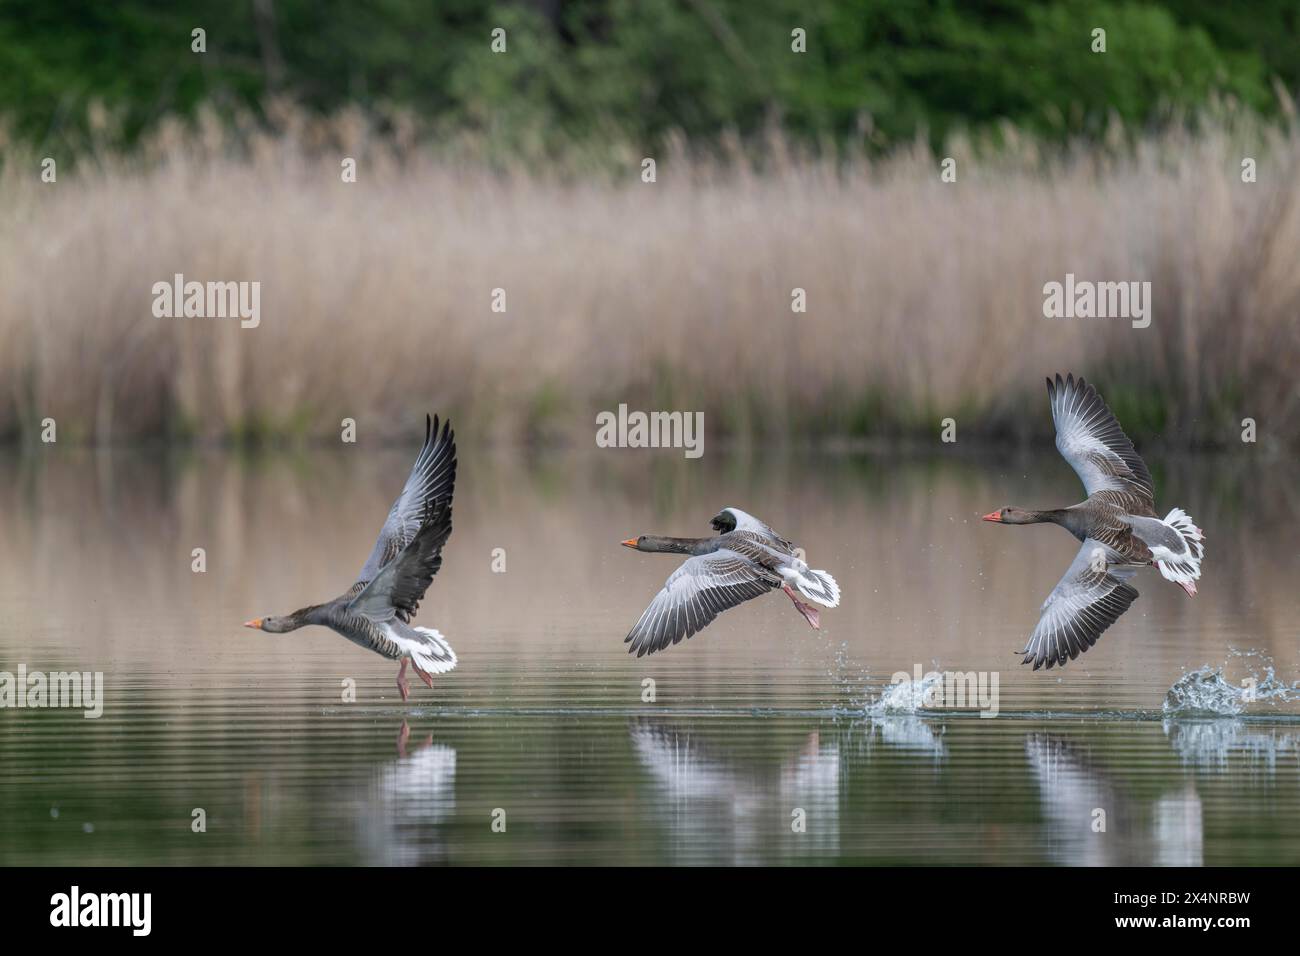 Oies de Greylag (Anser anser) oies de Greylag survolant un étang, Thuringe, Allemagne, Europe Banque D'Images